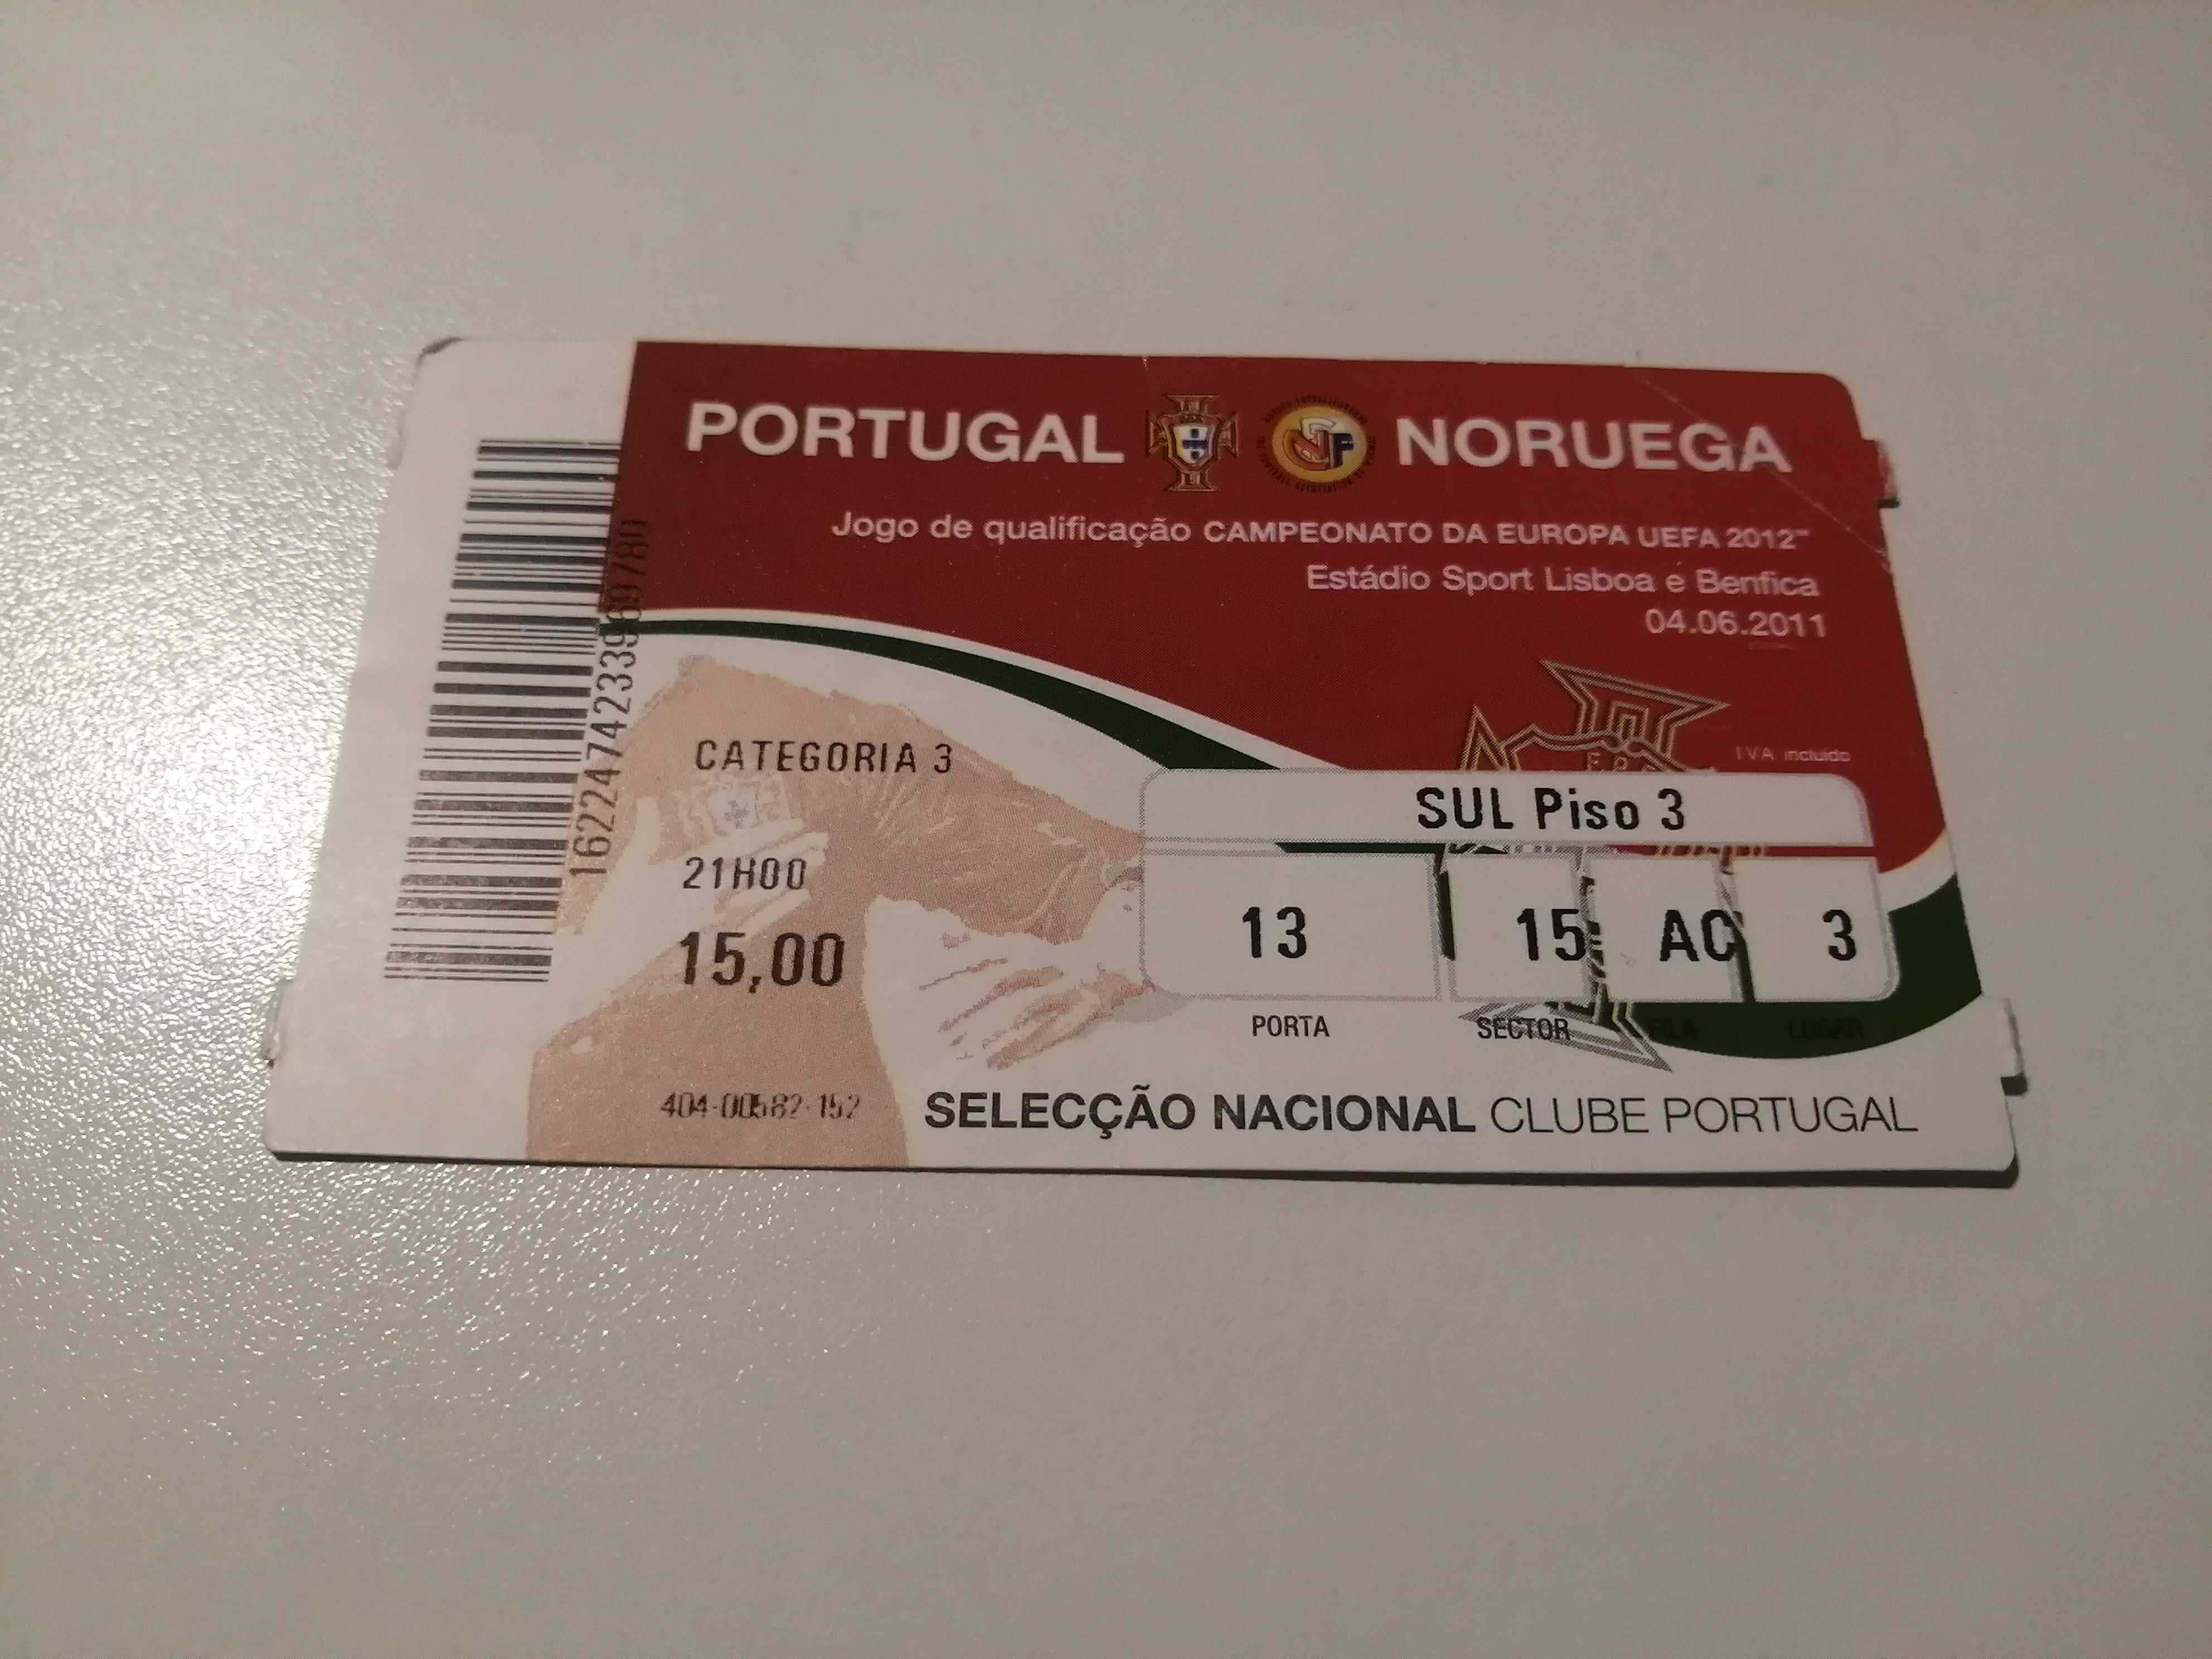 Bilhete Portugal - Noruega - Qualificação Campeonato da Europa 2012